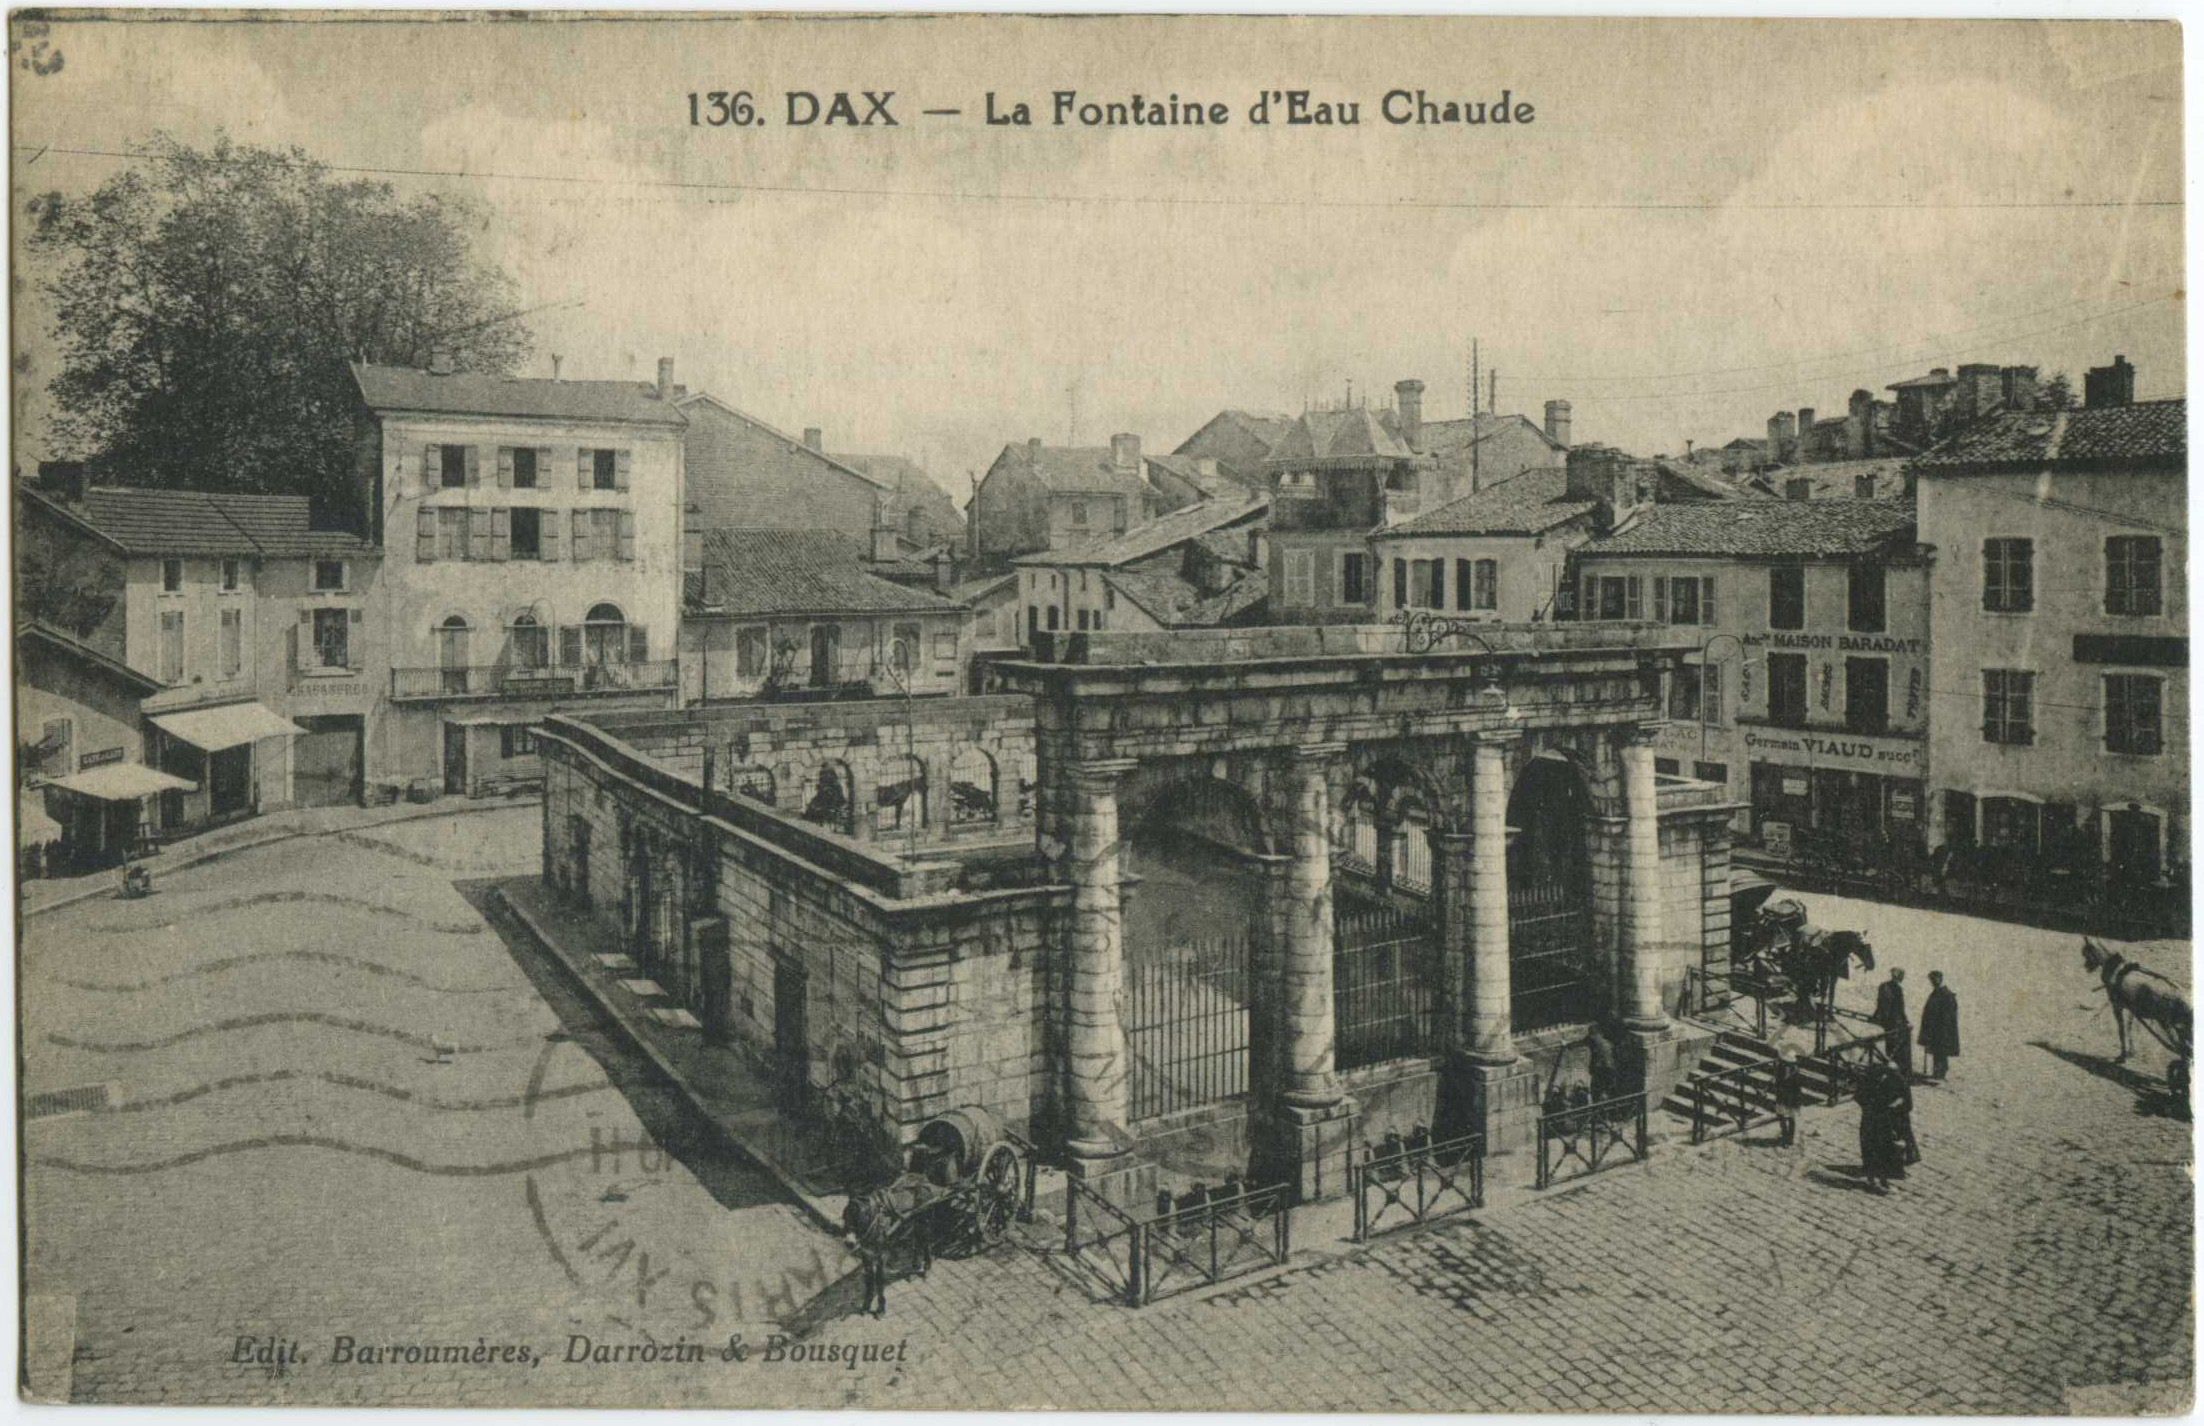 Dax - La Fontaine d'Eau Chaude